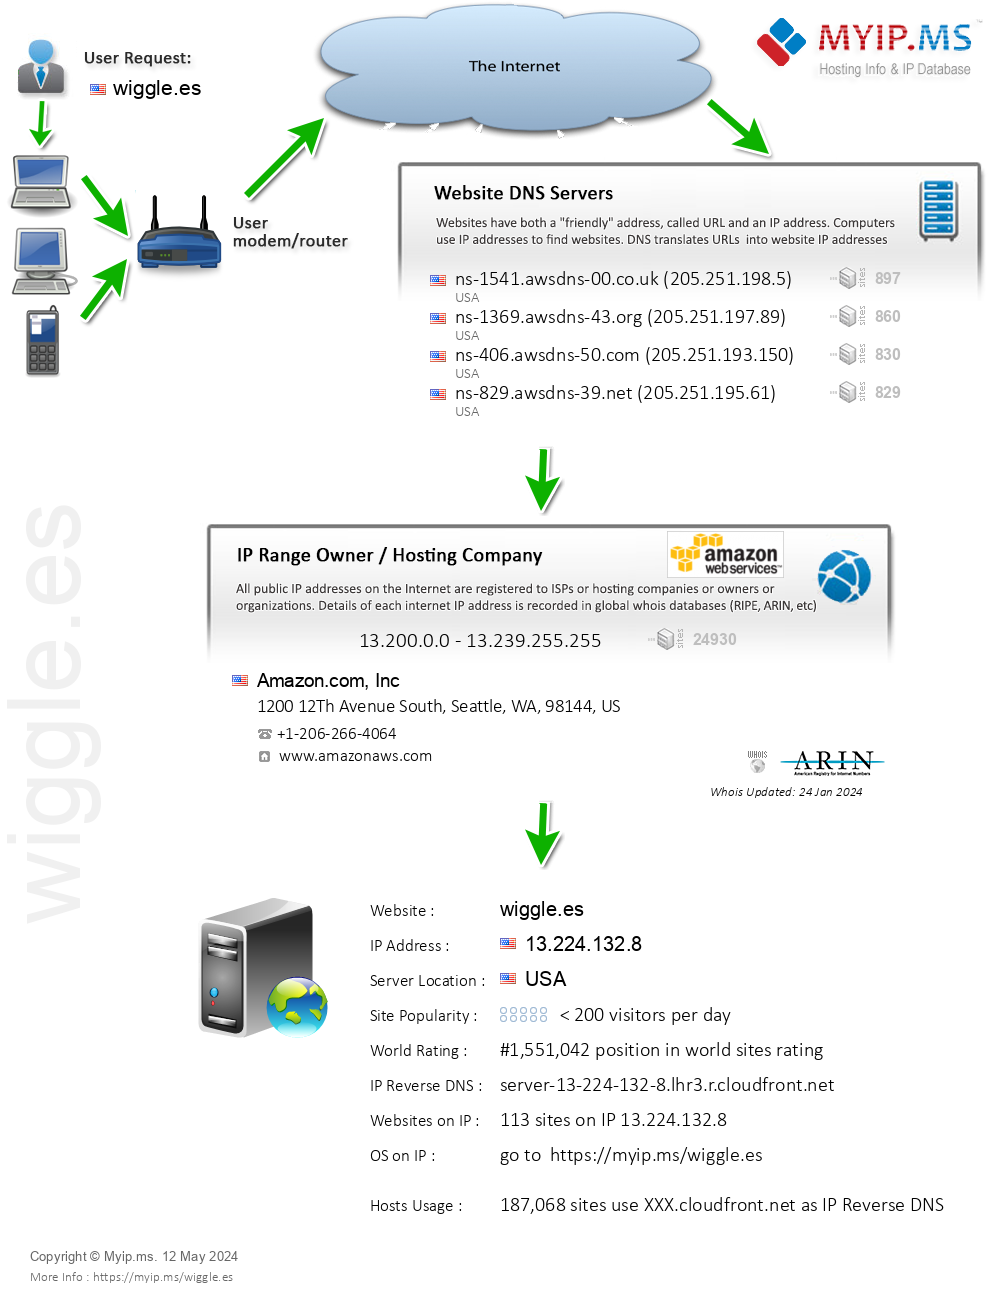 Wiggle.es - Website Hosting Visual IP Diagram